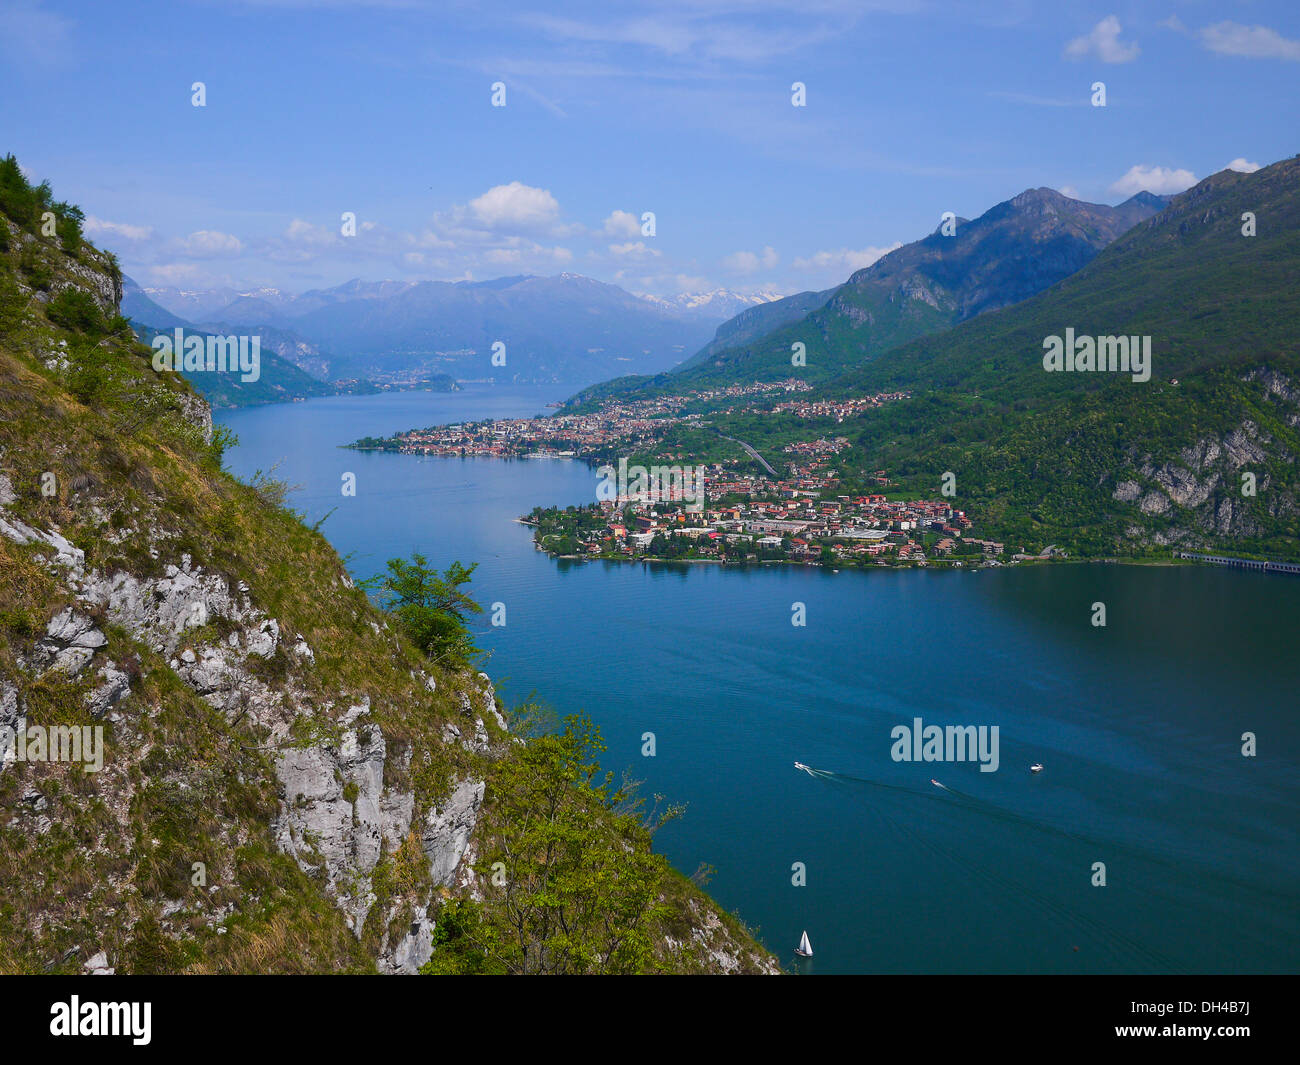 View of Abbadia Lariana and Mandello del Lario, Lecco and Como lake, Italy Stock Photo